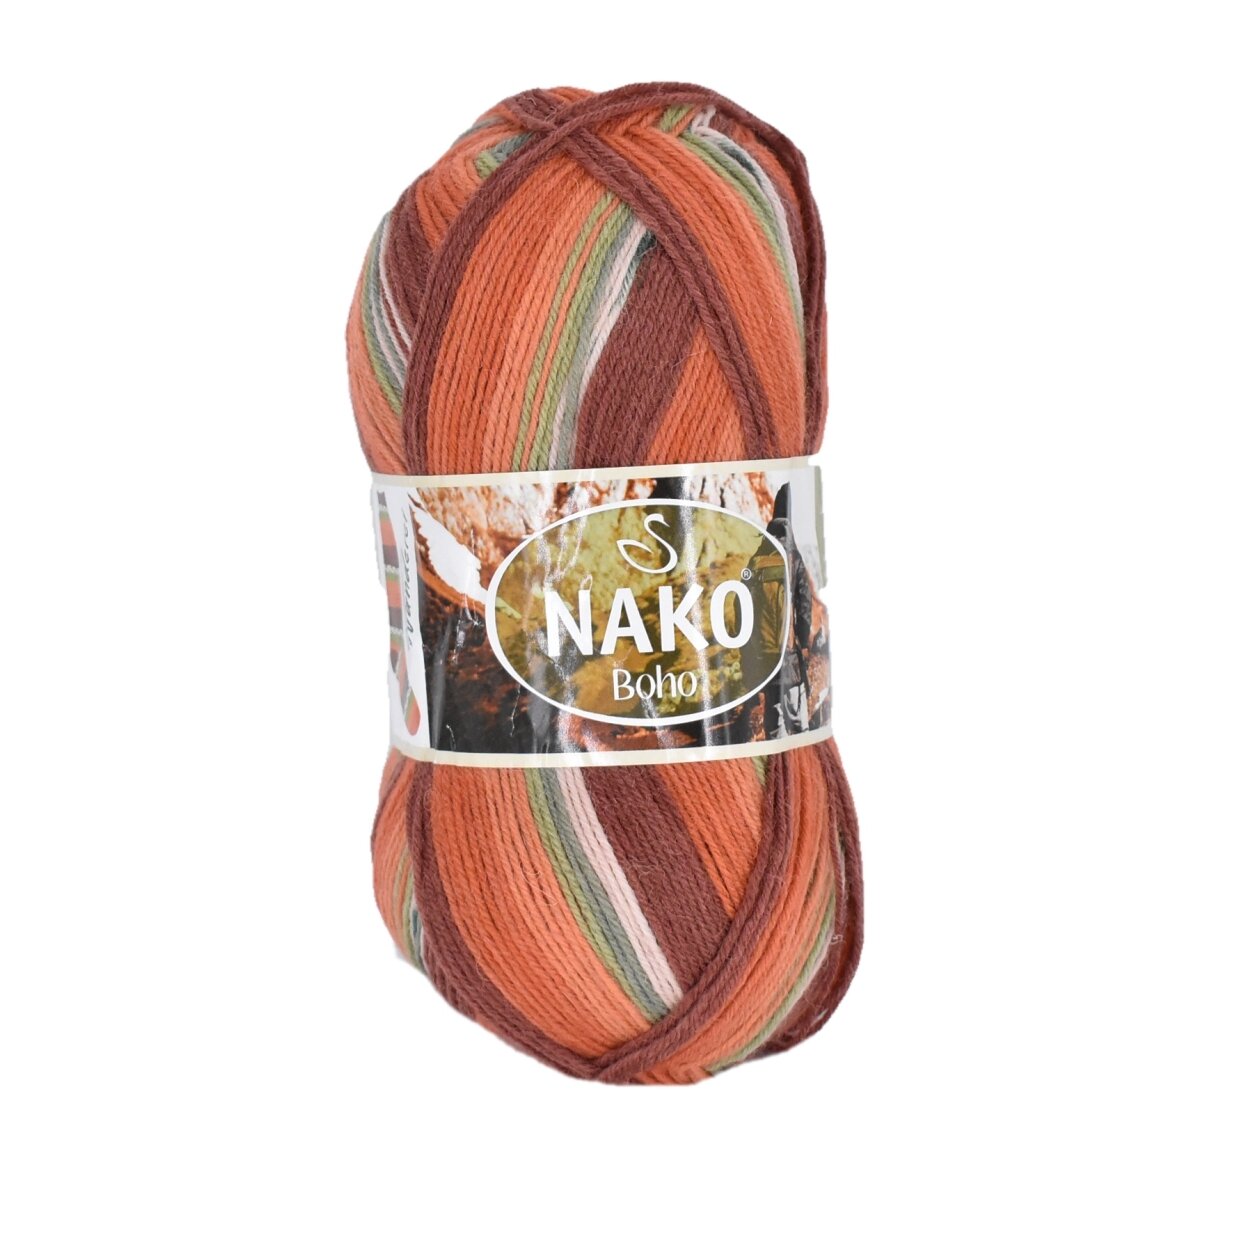 Nako Boho G M Nako Boho Wool Wool Knitting Yarn Yarn For Embroidery